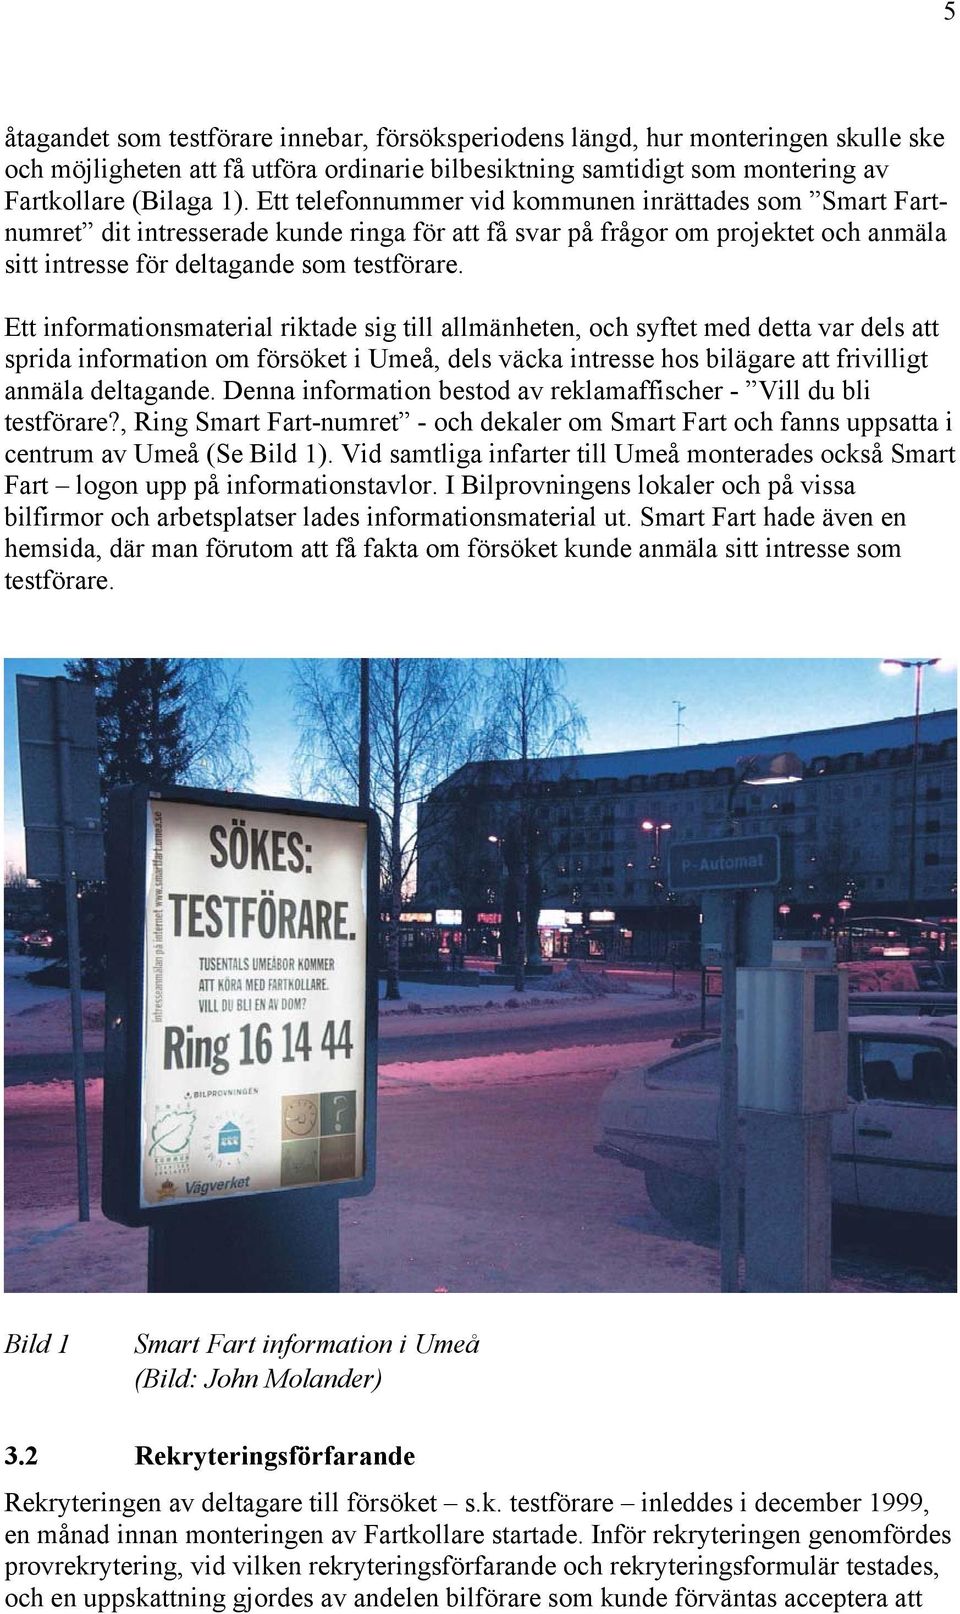 Ett informationsmaterial riktade sig till allmänheten, och syftet med detta var dels att sprida information om försöket i Umeå, dels väcka intresse hos bilägare att frivilligt anmäla deltagande.